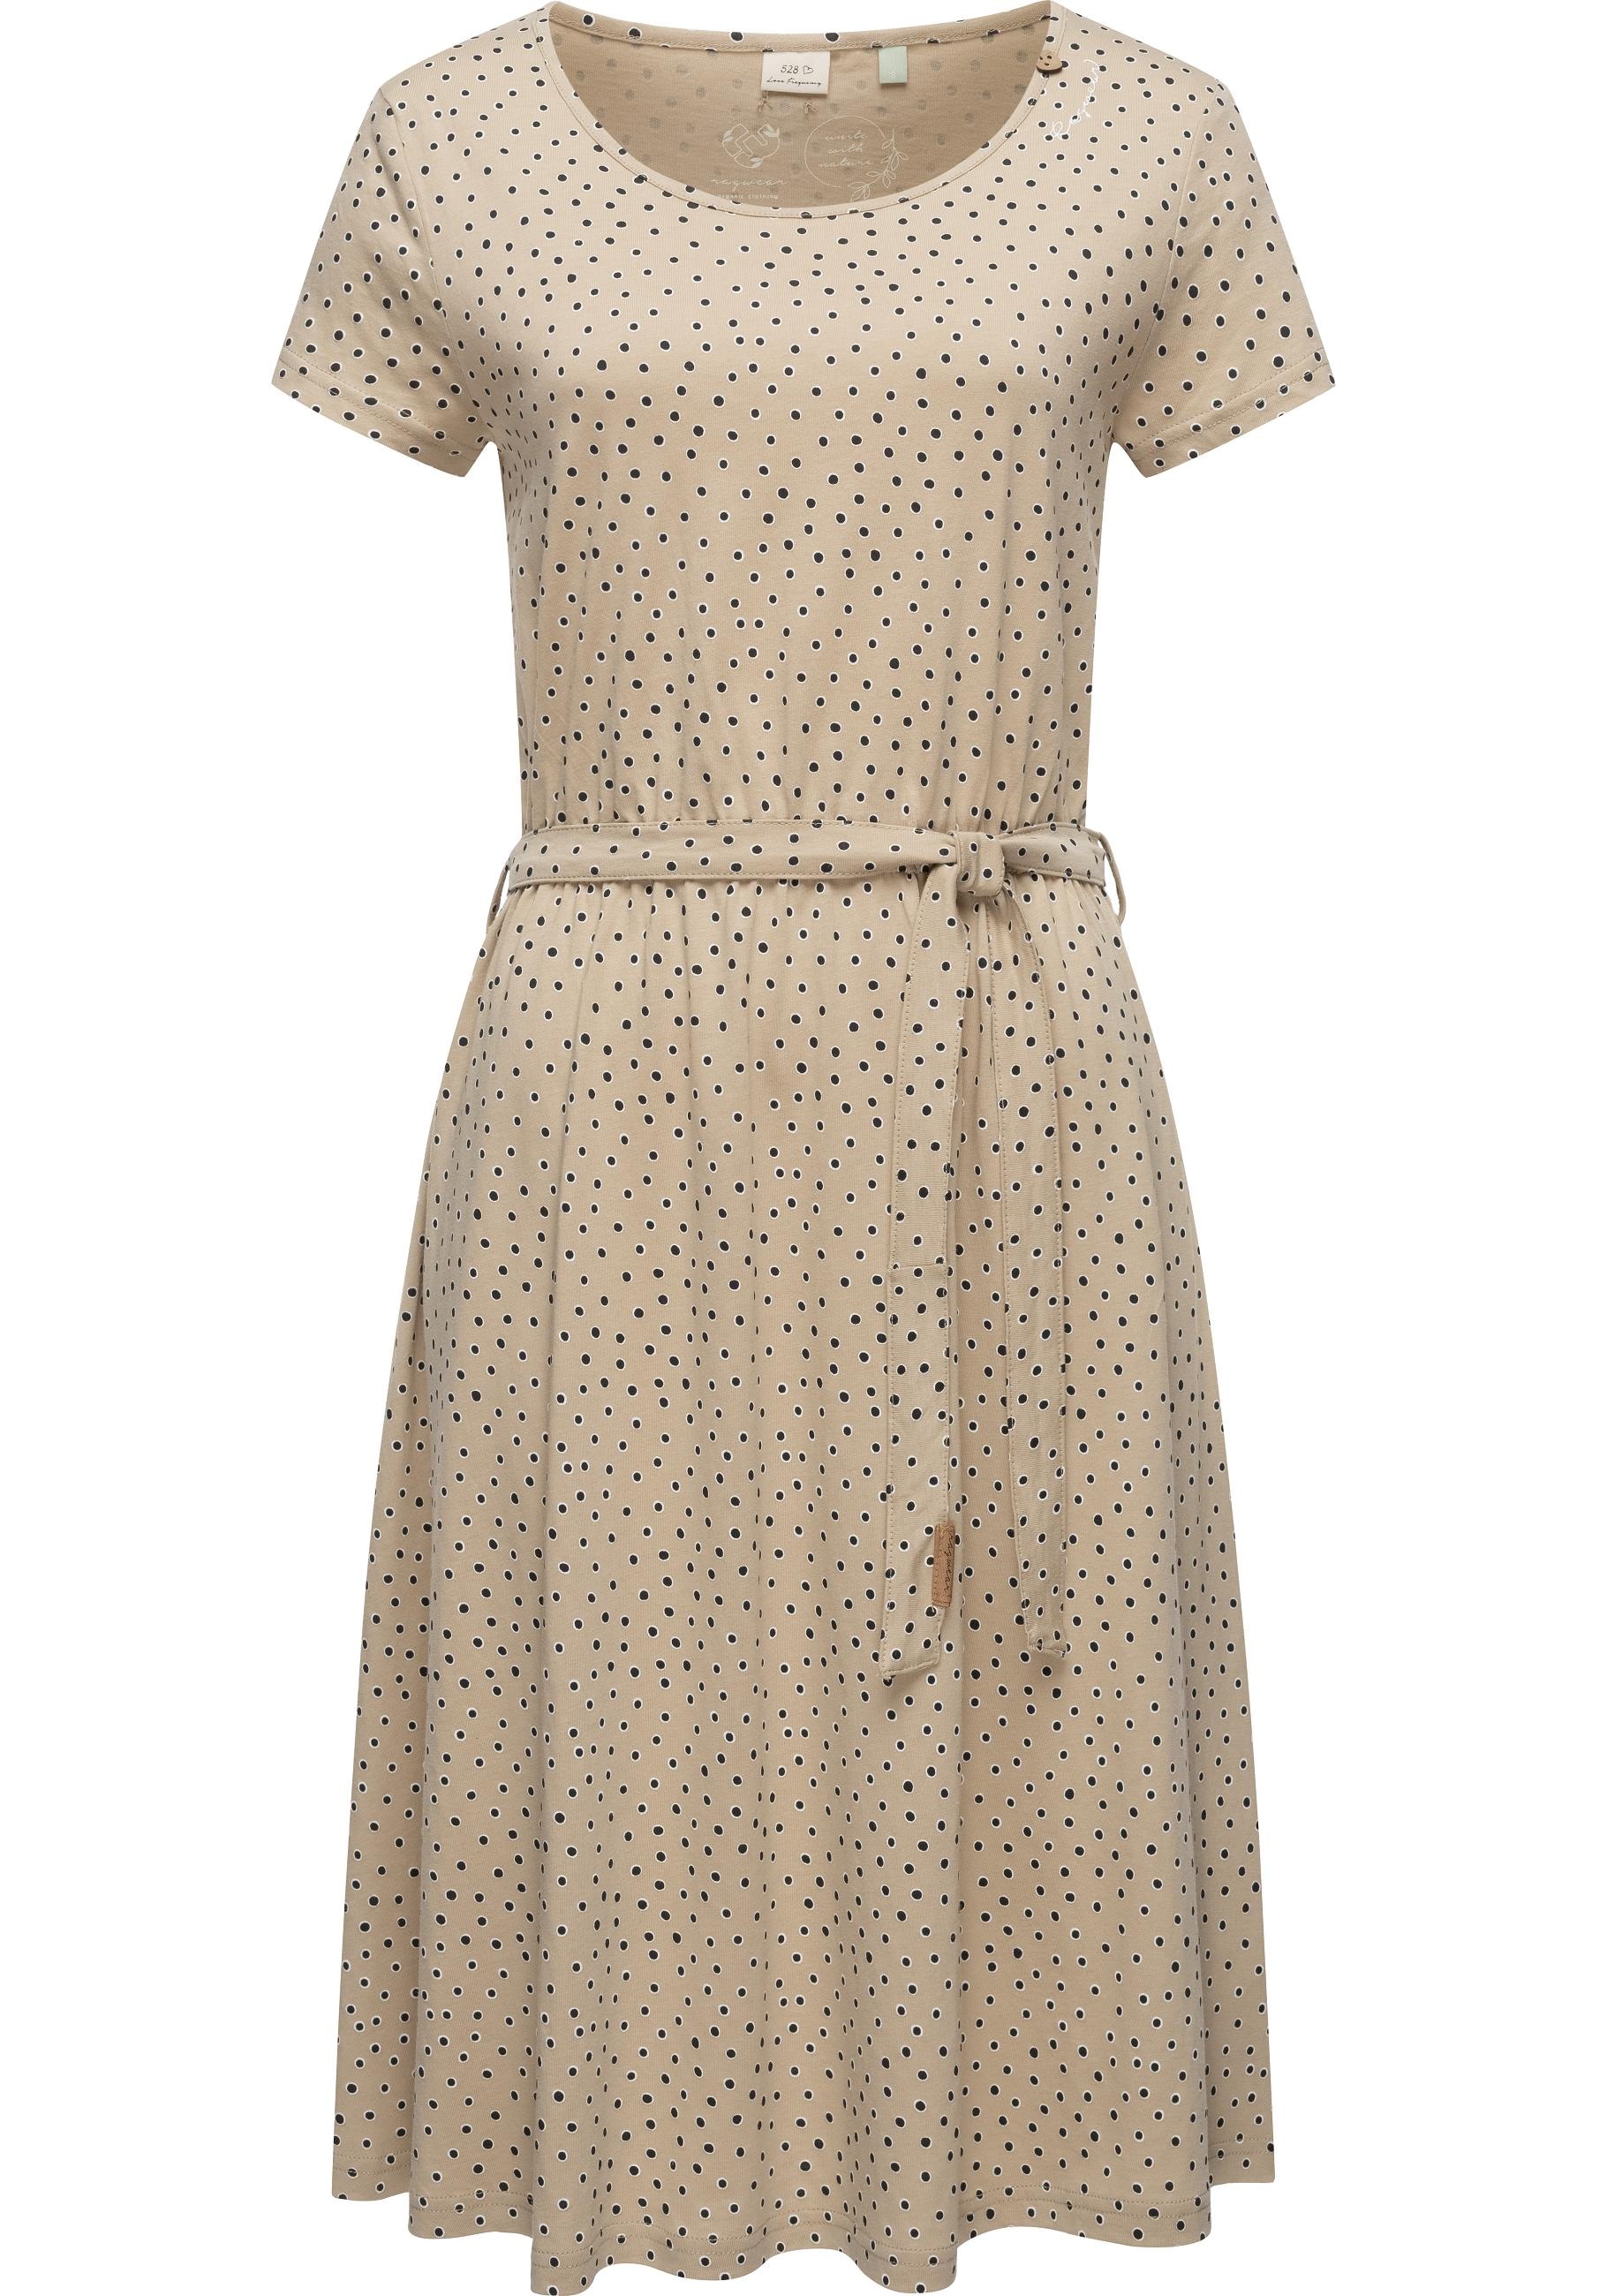 Shirtkleid »Olina Dress Organic«, stylisches Sommerkleid mit Print und Gürtel